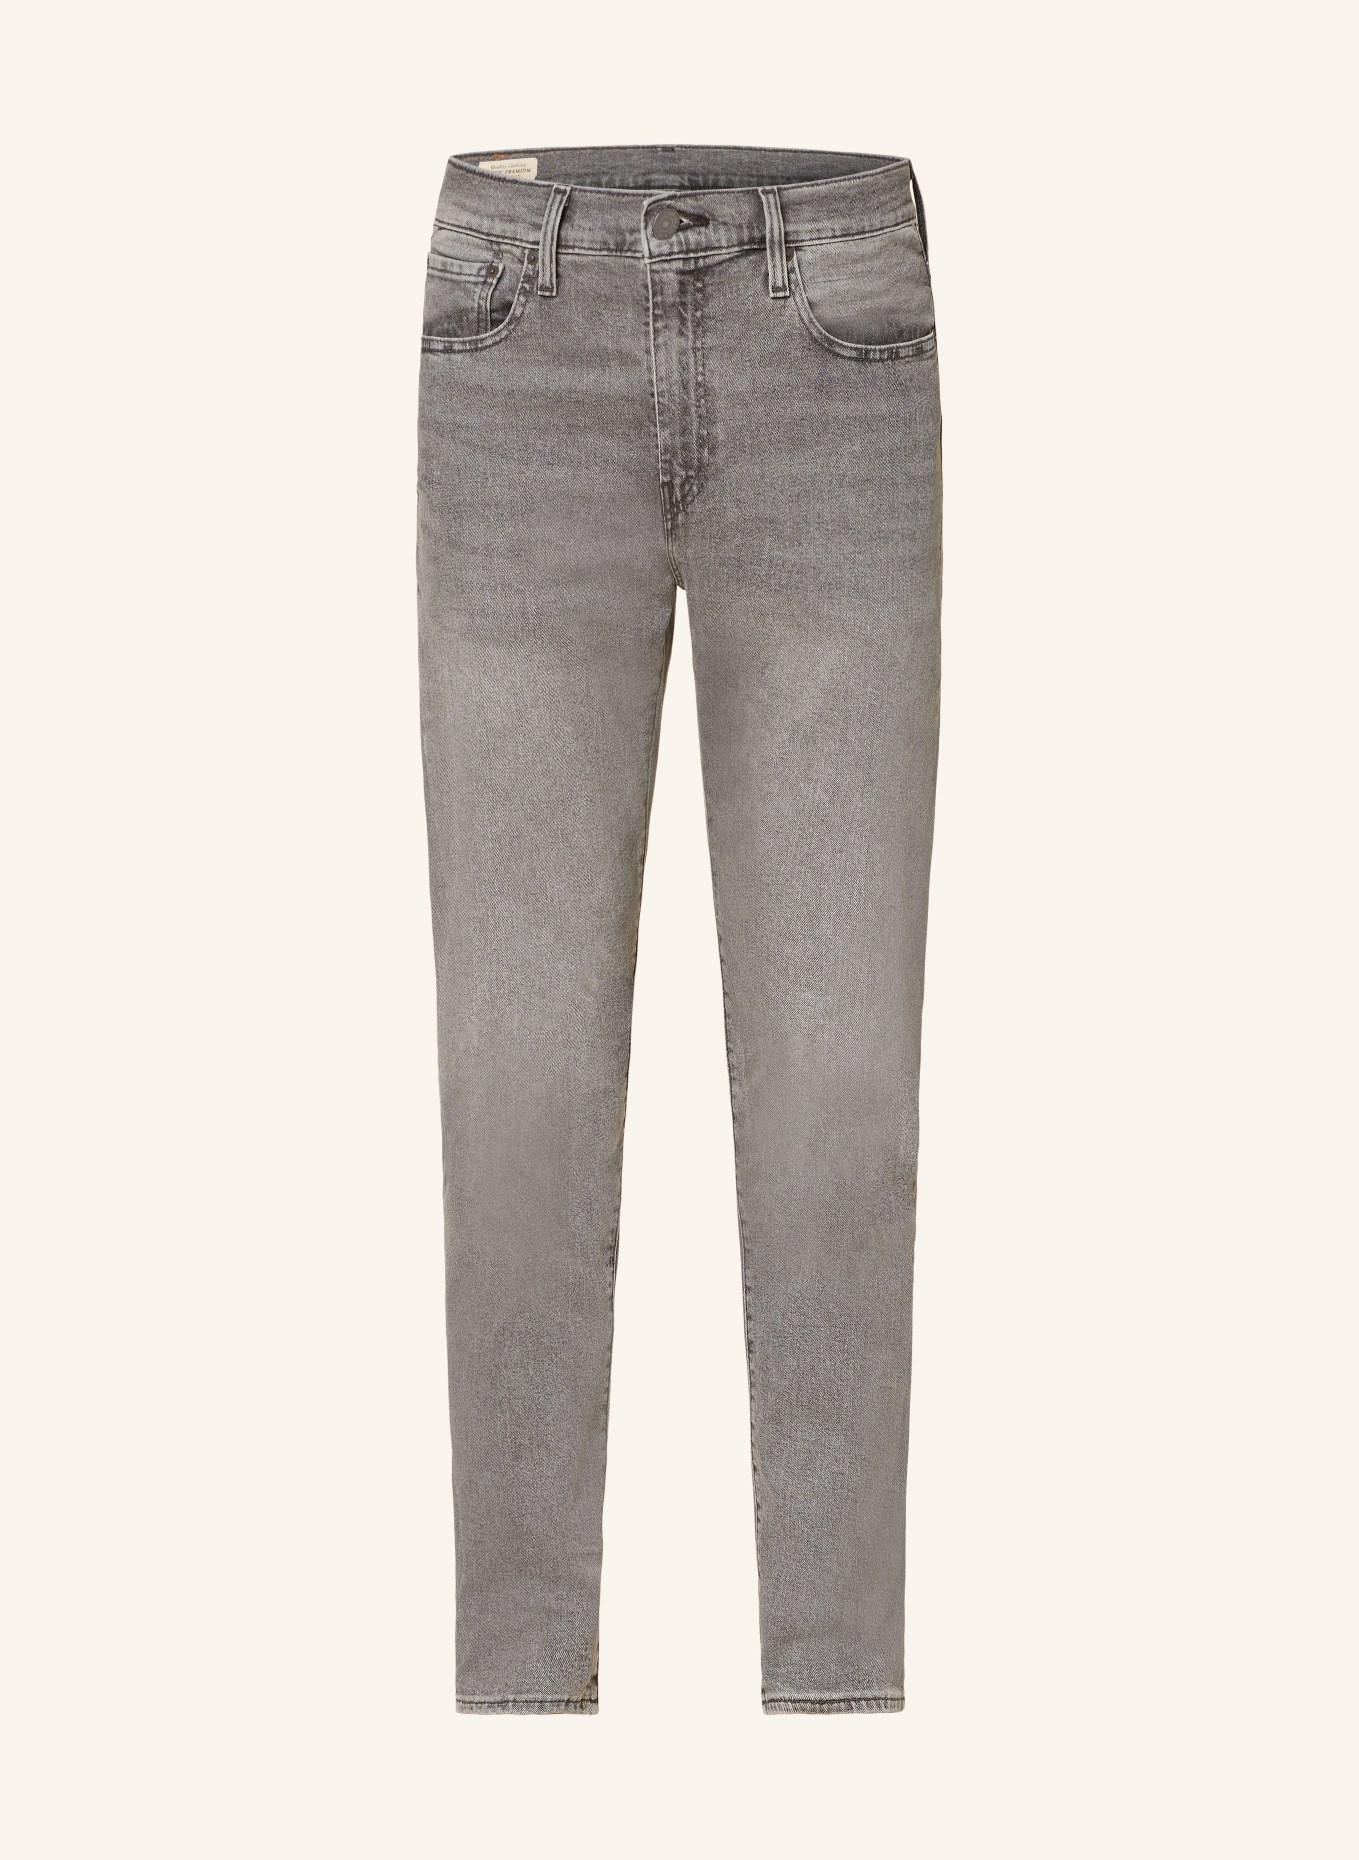 Levi's® Jeans 502 TAPER regular fit, Color: 20 Greys (Image 1)